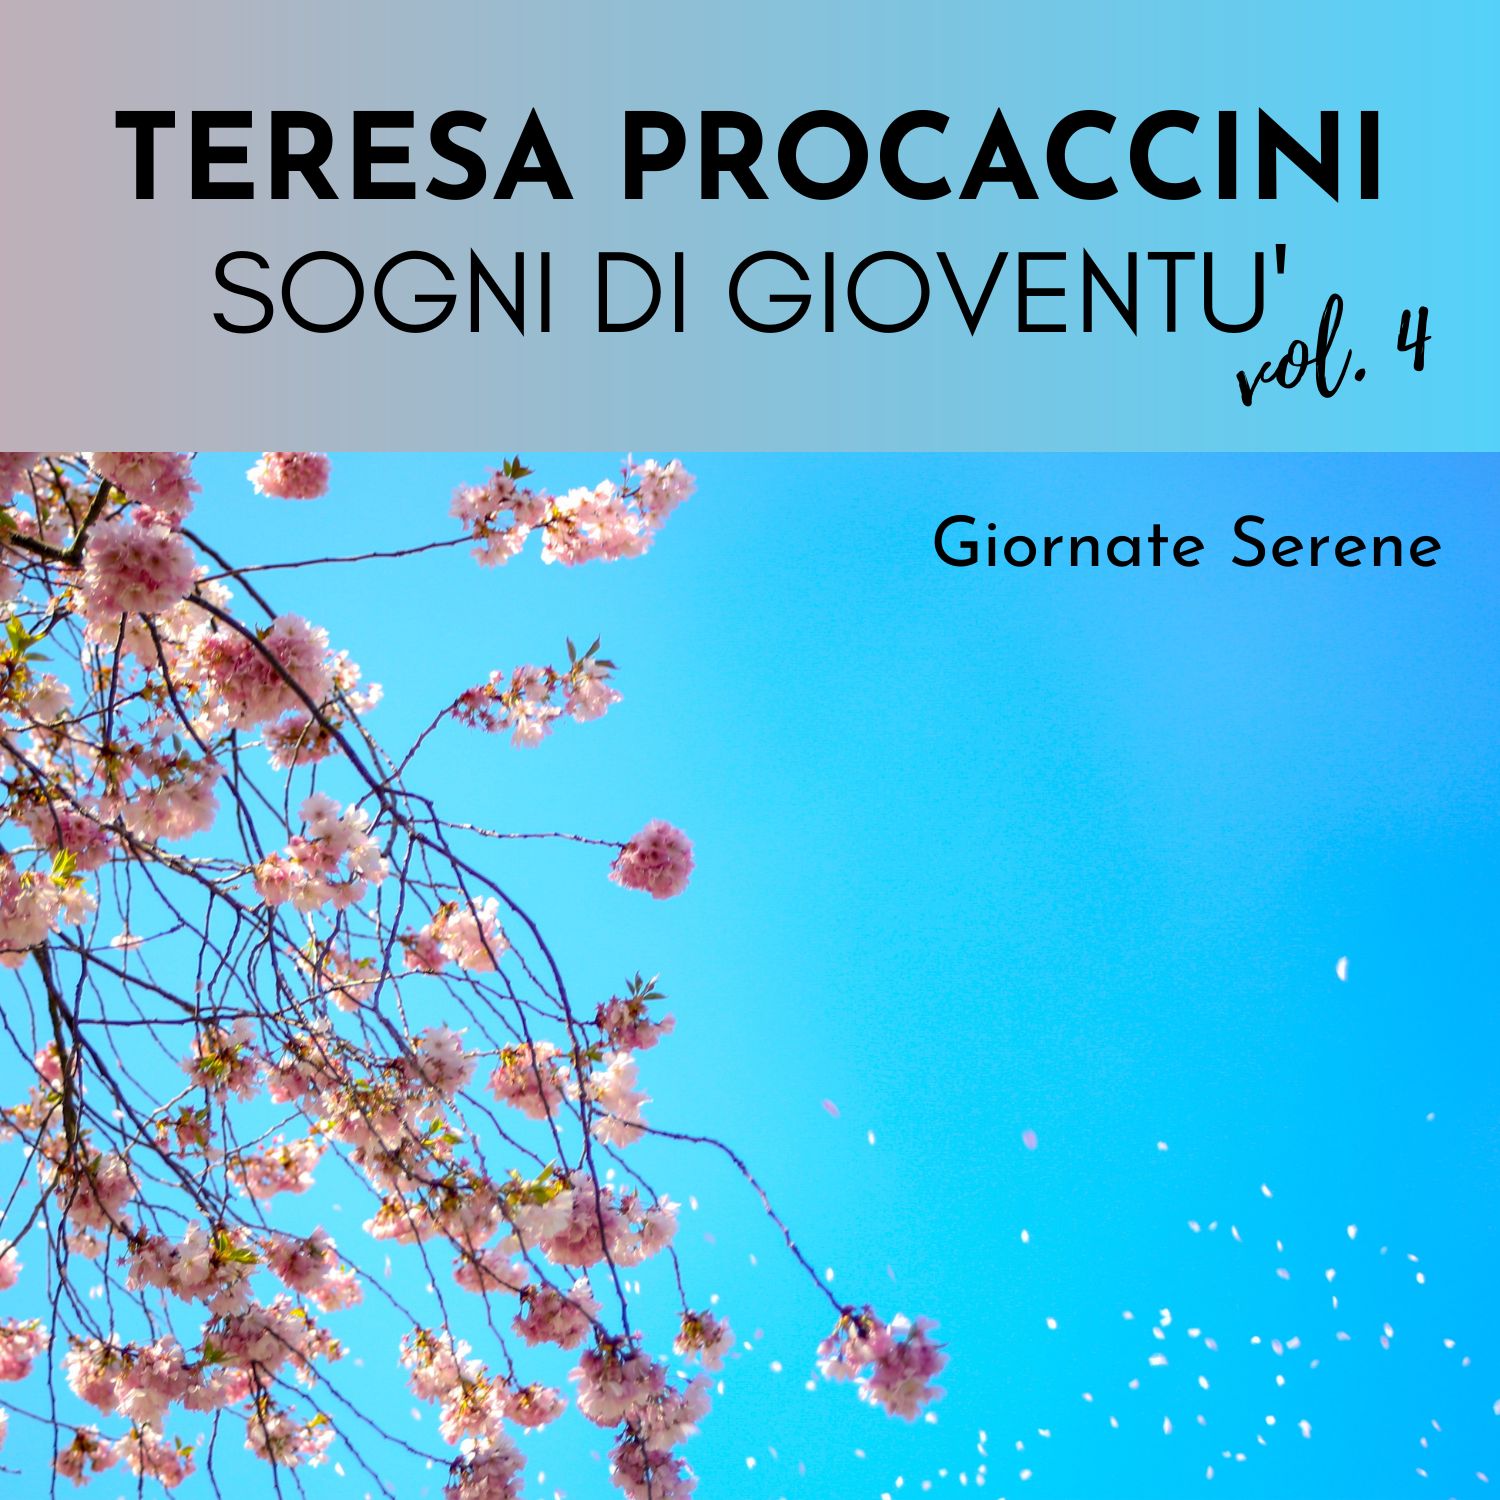 Teresa Procaccini: Sogni di gioventù Vol. 4 (Giornate serene)